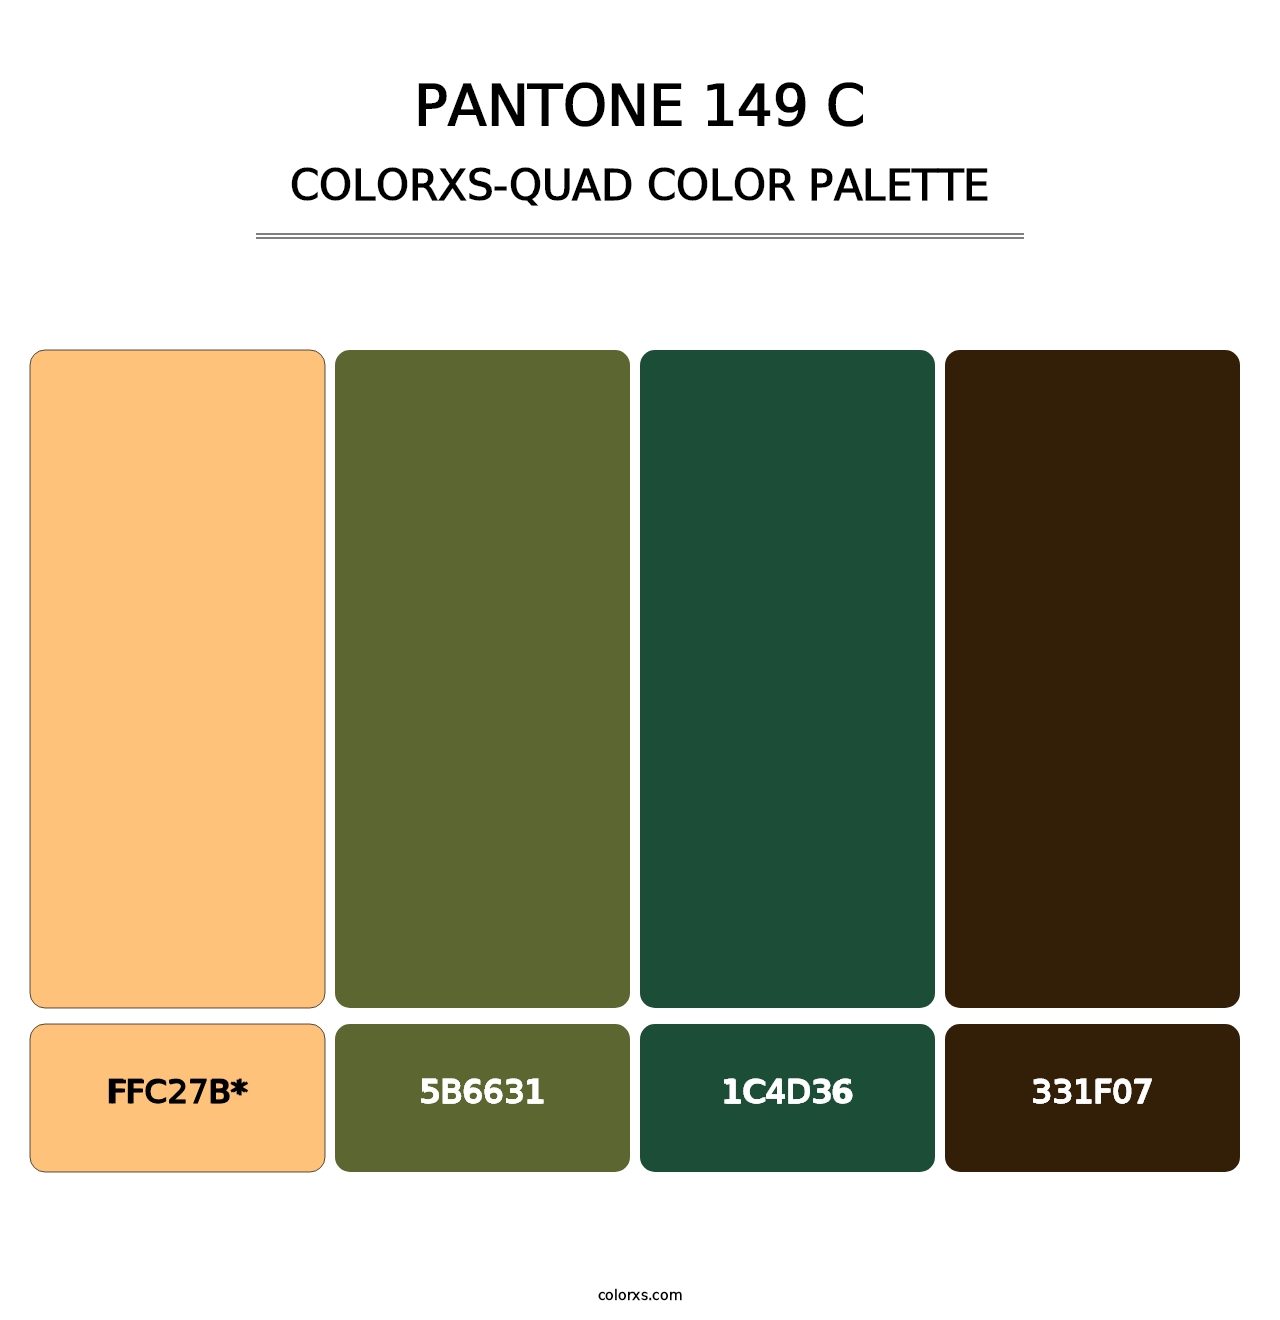 PANTONE 149 C - Colorxs Quad Palette